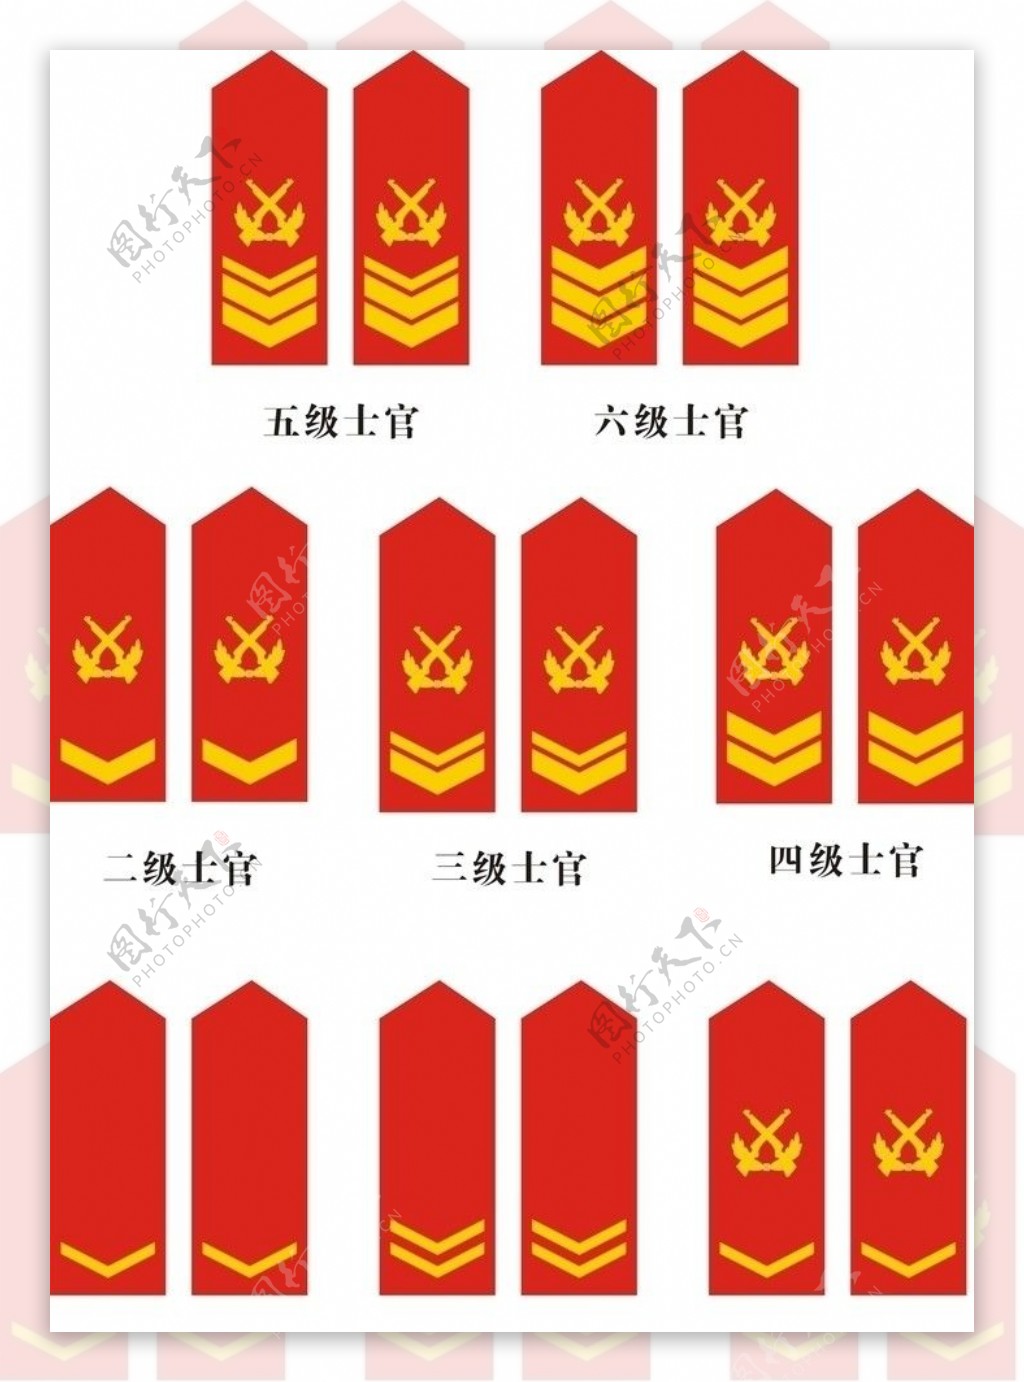 中国人民07陆军少校到上将常服肩章图片素材-编号13929777-图行天下